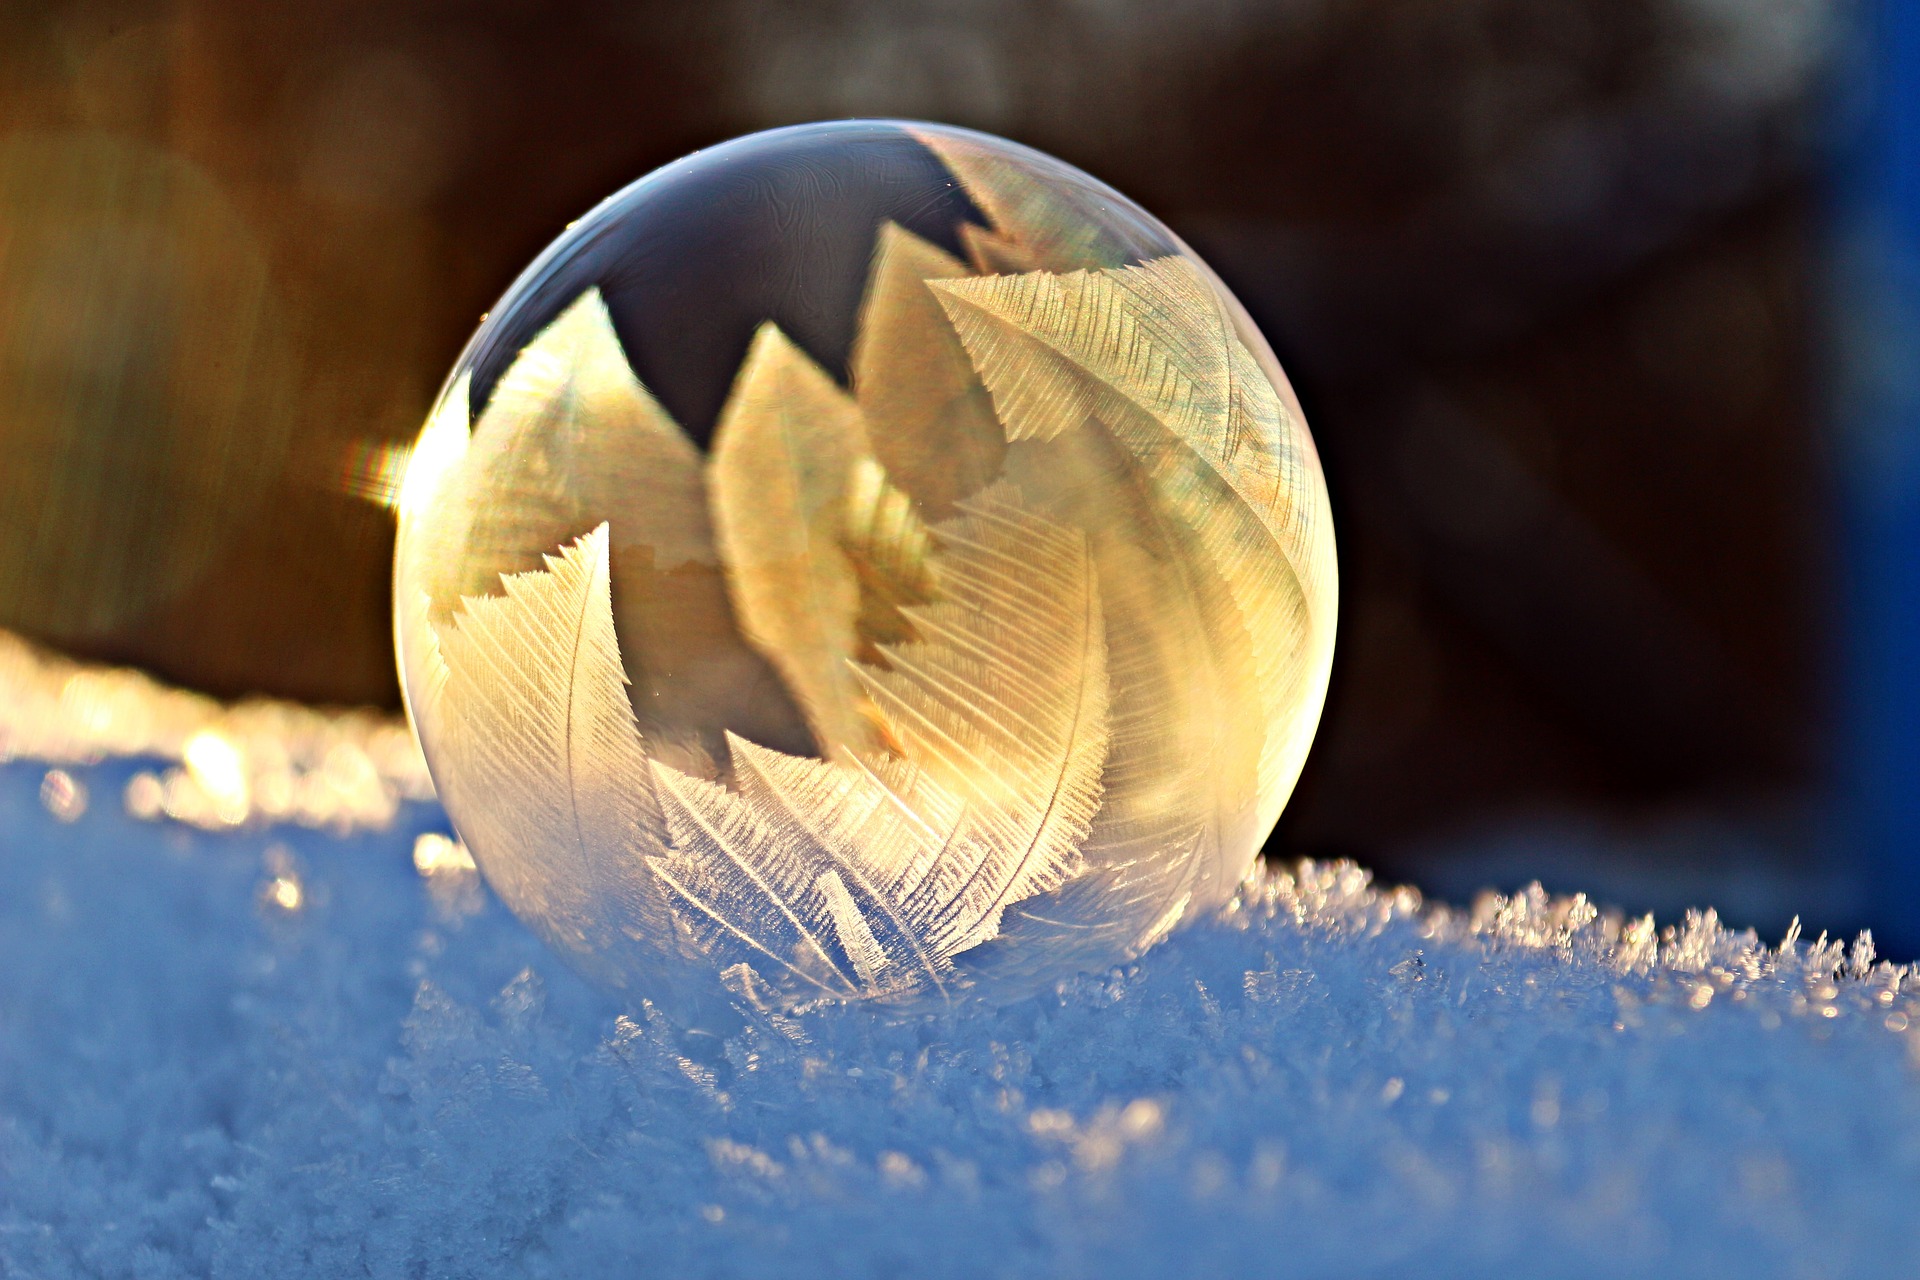 Creative Commons CC0 https://pixabay.com/en/soap-bubble-frost-snow-bubble-1958650/